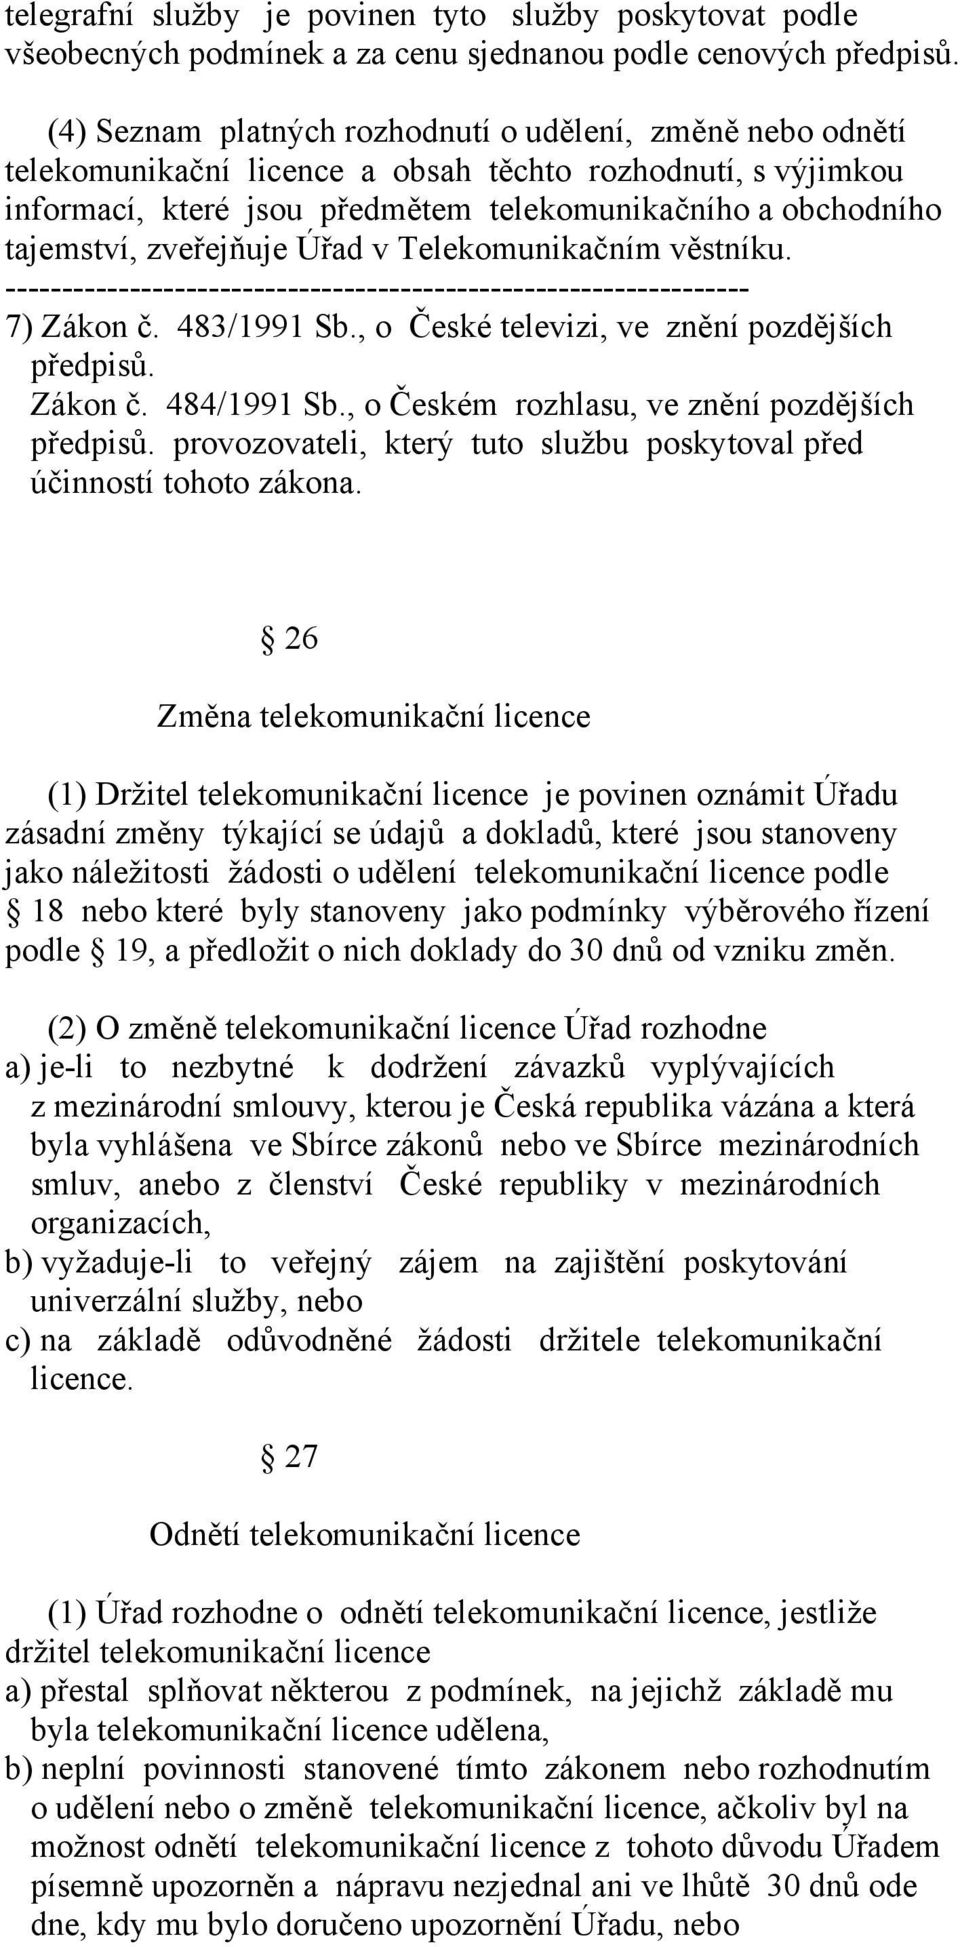 zveřejňuje Úřad v Telekomunikačním věstníku. ------------------------------------------------------------------ 7) Zákon č. 483/1991 Sb., o České televizi, ve znění pozdějších předpisů. Zákon č. 484/1991 Sb.